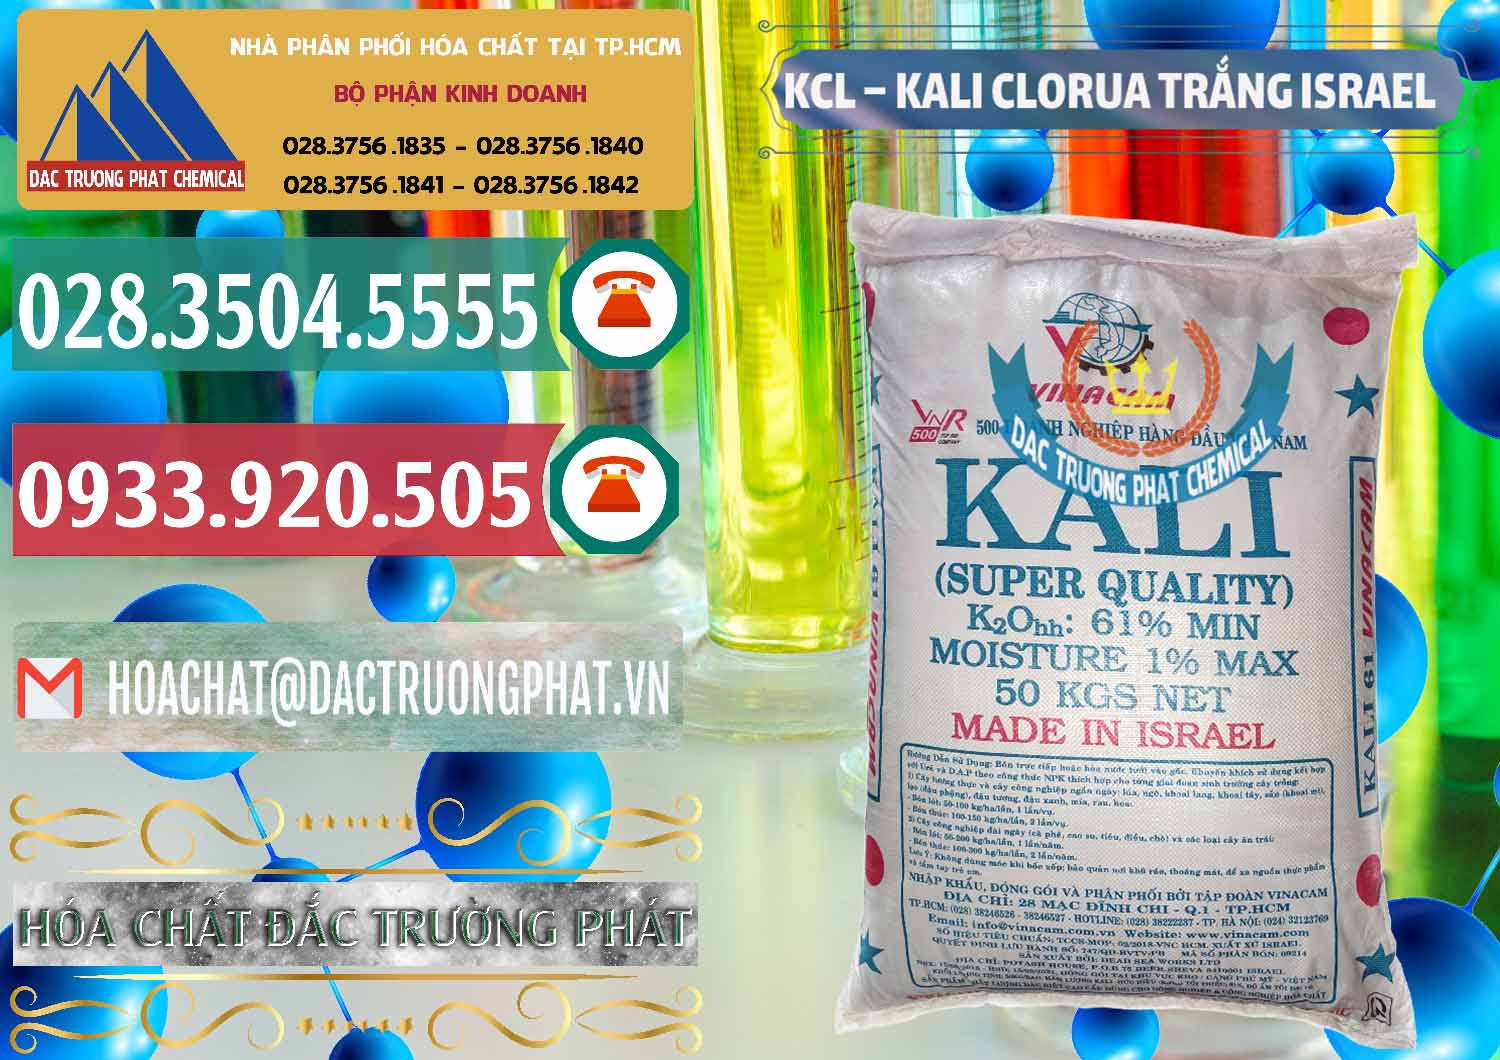 Nơi chuyên bán và phân phối KCL – Kali Clorua Trắng Israel - 0087 - Công ty kinh doanh và cung cấp hóa chất tại TP.HCM - muabanhoachat.vn